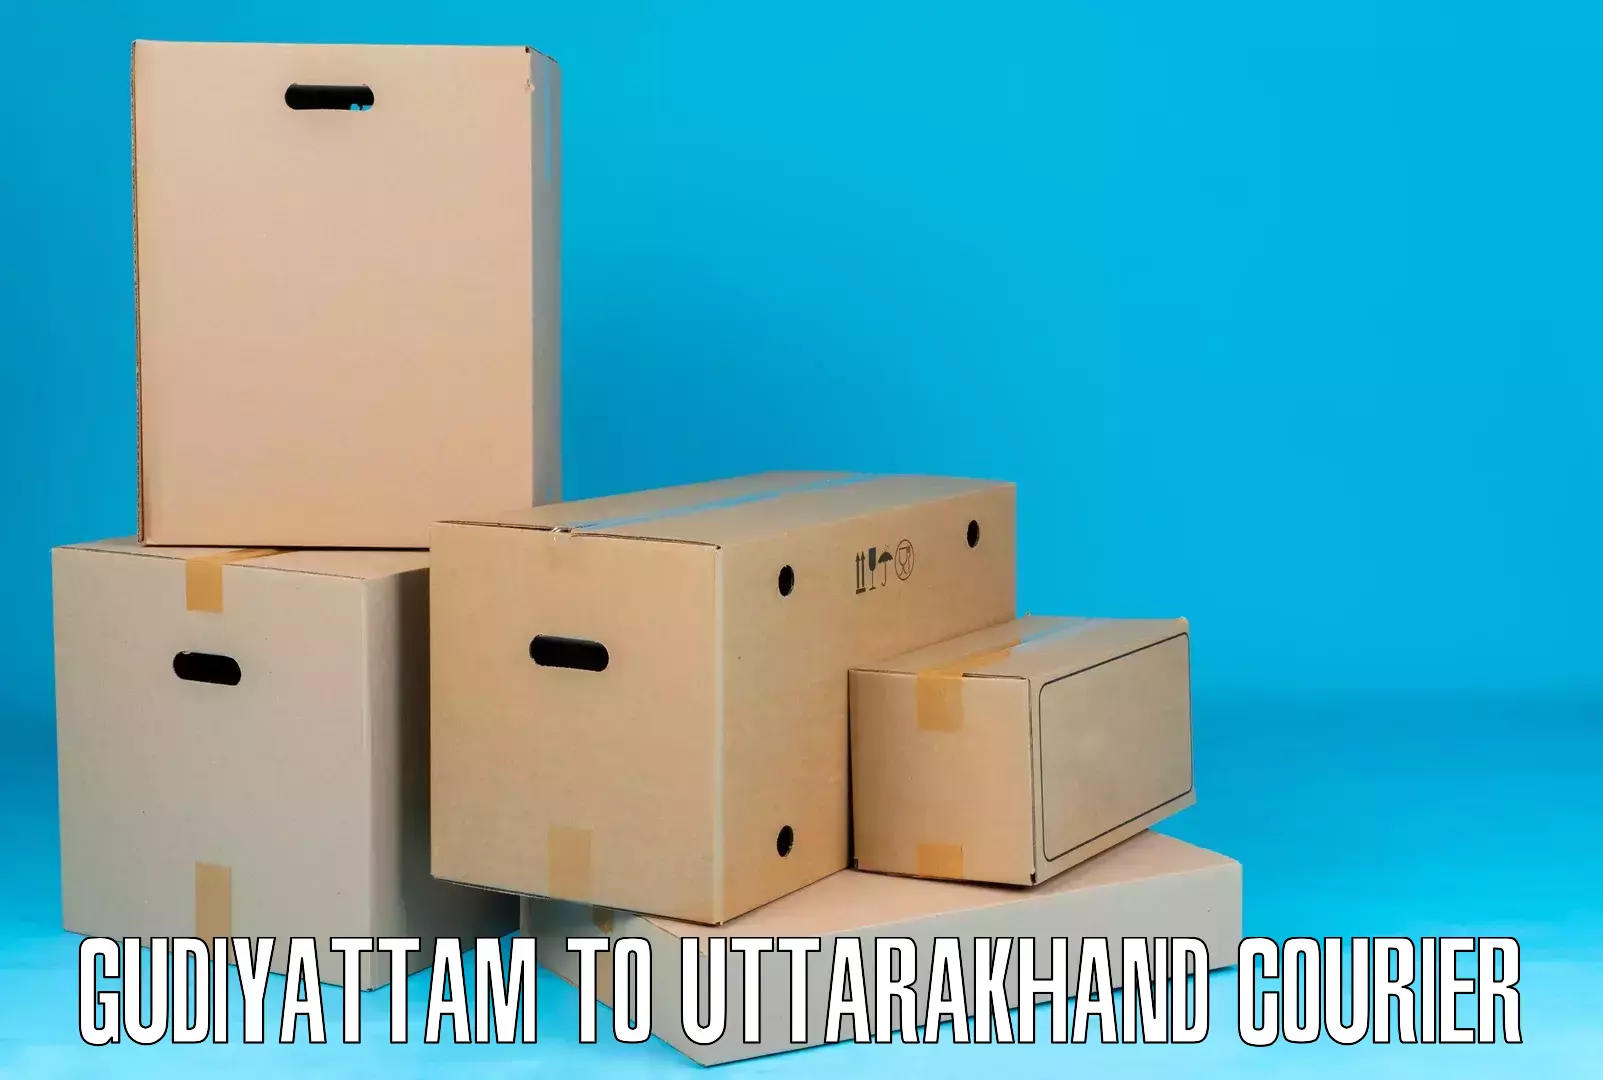 Seamless shipping service Gudiyattam to Uttarakhand